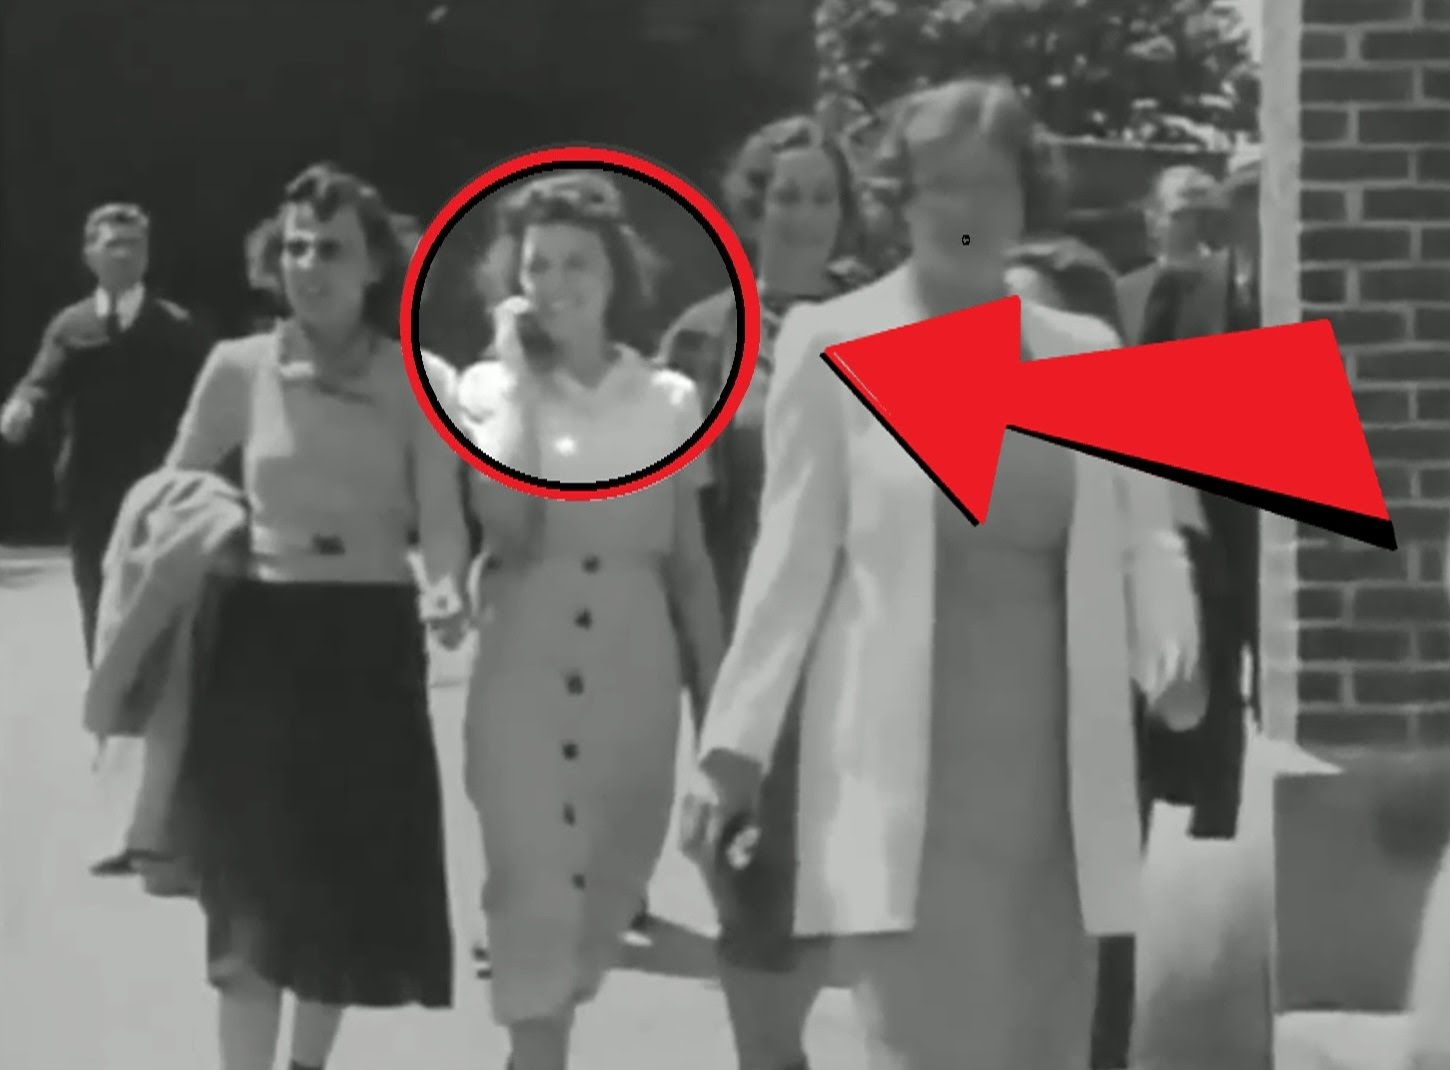 El Misterio del Teléfono móvil registrado en una película de 1938 (Video)